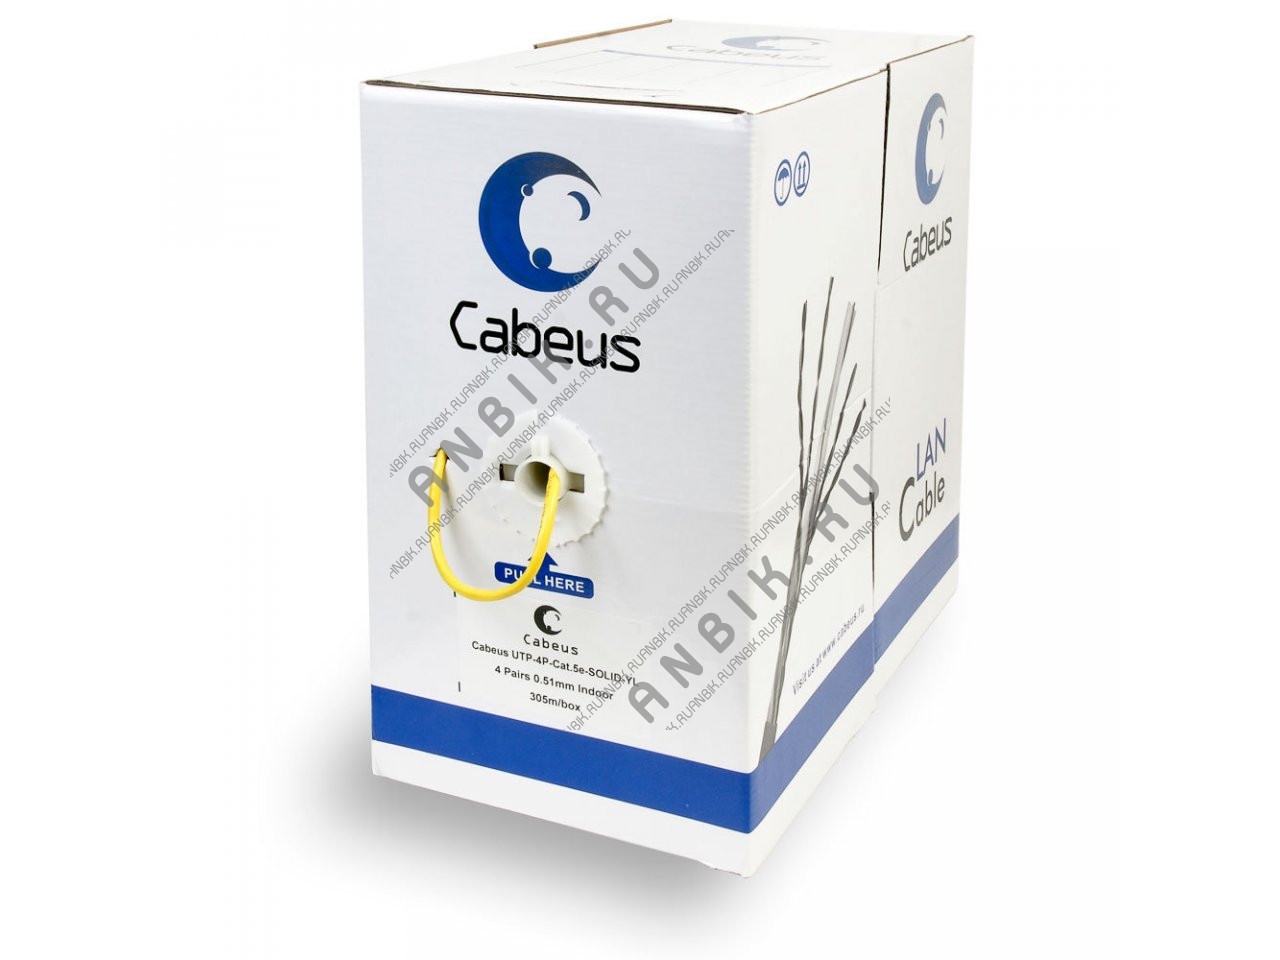 Cabeus UTP-4P-Cat.5e-SOLID-YL Кабель витая пара UTP (U/UTP), категория 5e, 4 пары 0,51мм (24 AWG), одножильный, желтый (305 м), системная гарантия 25 лет.